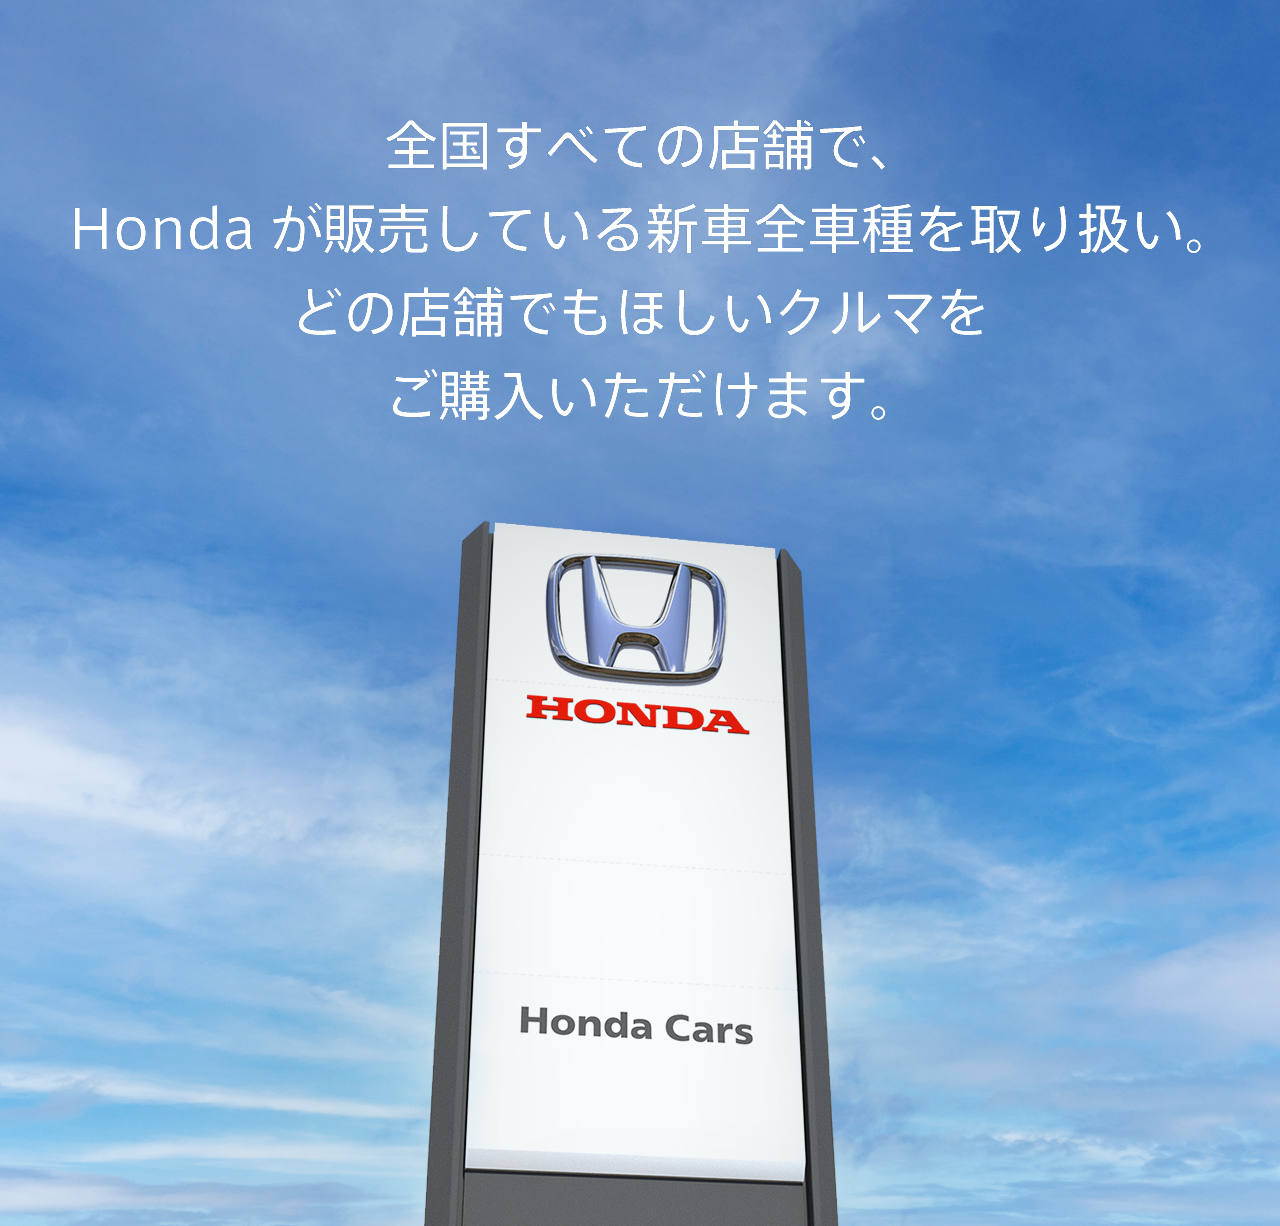 全国すべての店舗で、Hondaが販売している新車全車種を取り扱い。どの店舗でもほしいクルマをご購入いただけます。